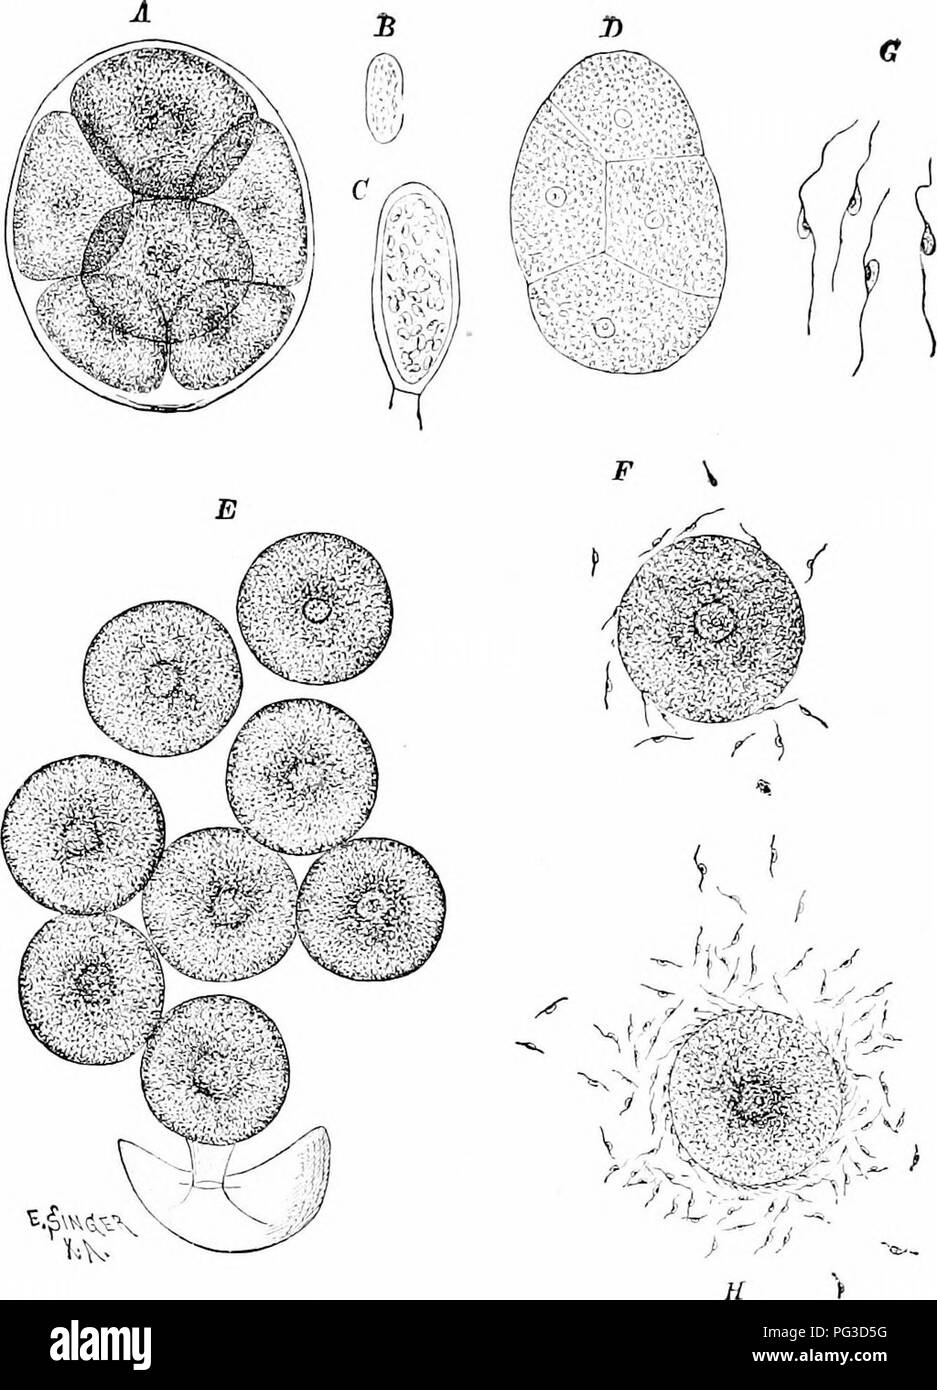 . Estudios de las plantas; un elemental de la botánica. La botánica. Fig. 3:31). La reproducción sexual de Fhci/s, mostrando los ocho huevos isix en ocho) dis- cargada fi-nio tlic eurronnded oogonium y por una membrana (A), huevos liberados de la membrana (E i, antheridinm conteniendo espermatozoides ( 6'). La descarga de lat- erally biciliate espermatozoides i (;), y huevos rodeados por enjambres de espermatozoides (F, H).- Luego de que el vocalista. Por favor tenga en cuenta que estas imágenes son extraídas de la página escaneada imágenes que podrían haber sido mejoradas digitalmente para mejorar la legibilidad, la coloración y el aspecto de estas ilustraciones pueden no parecerse perfectamente a la original w Foto de stock